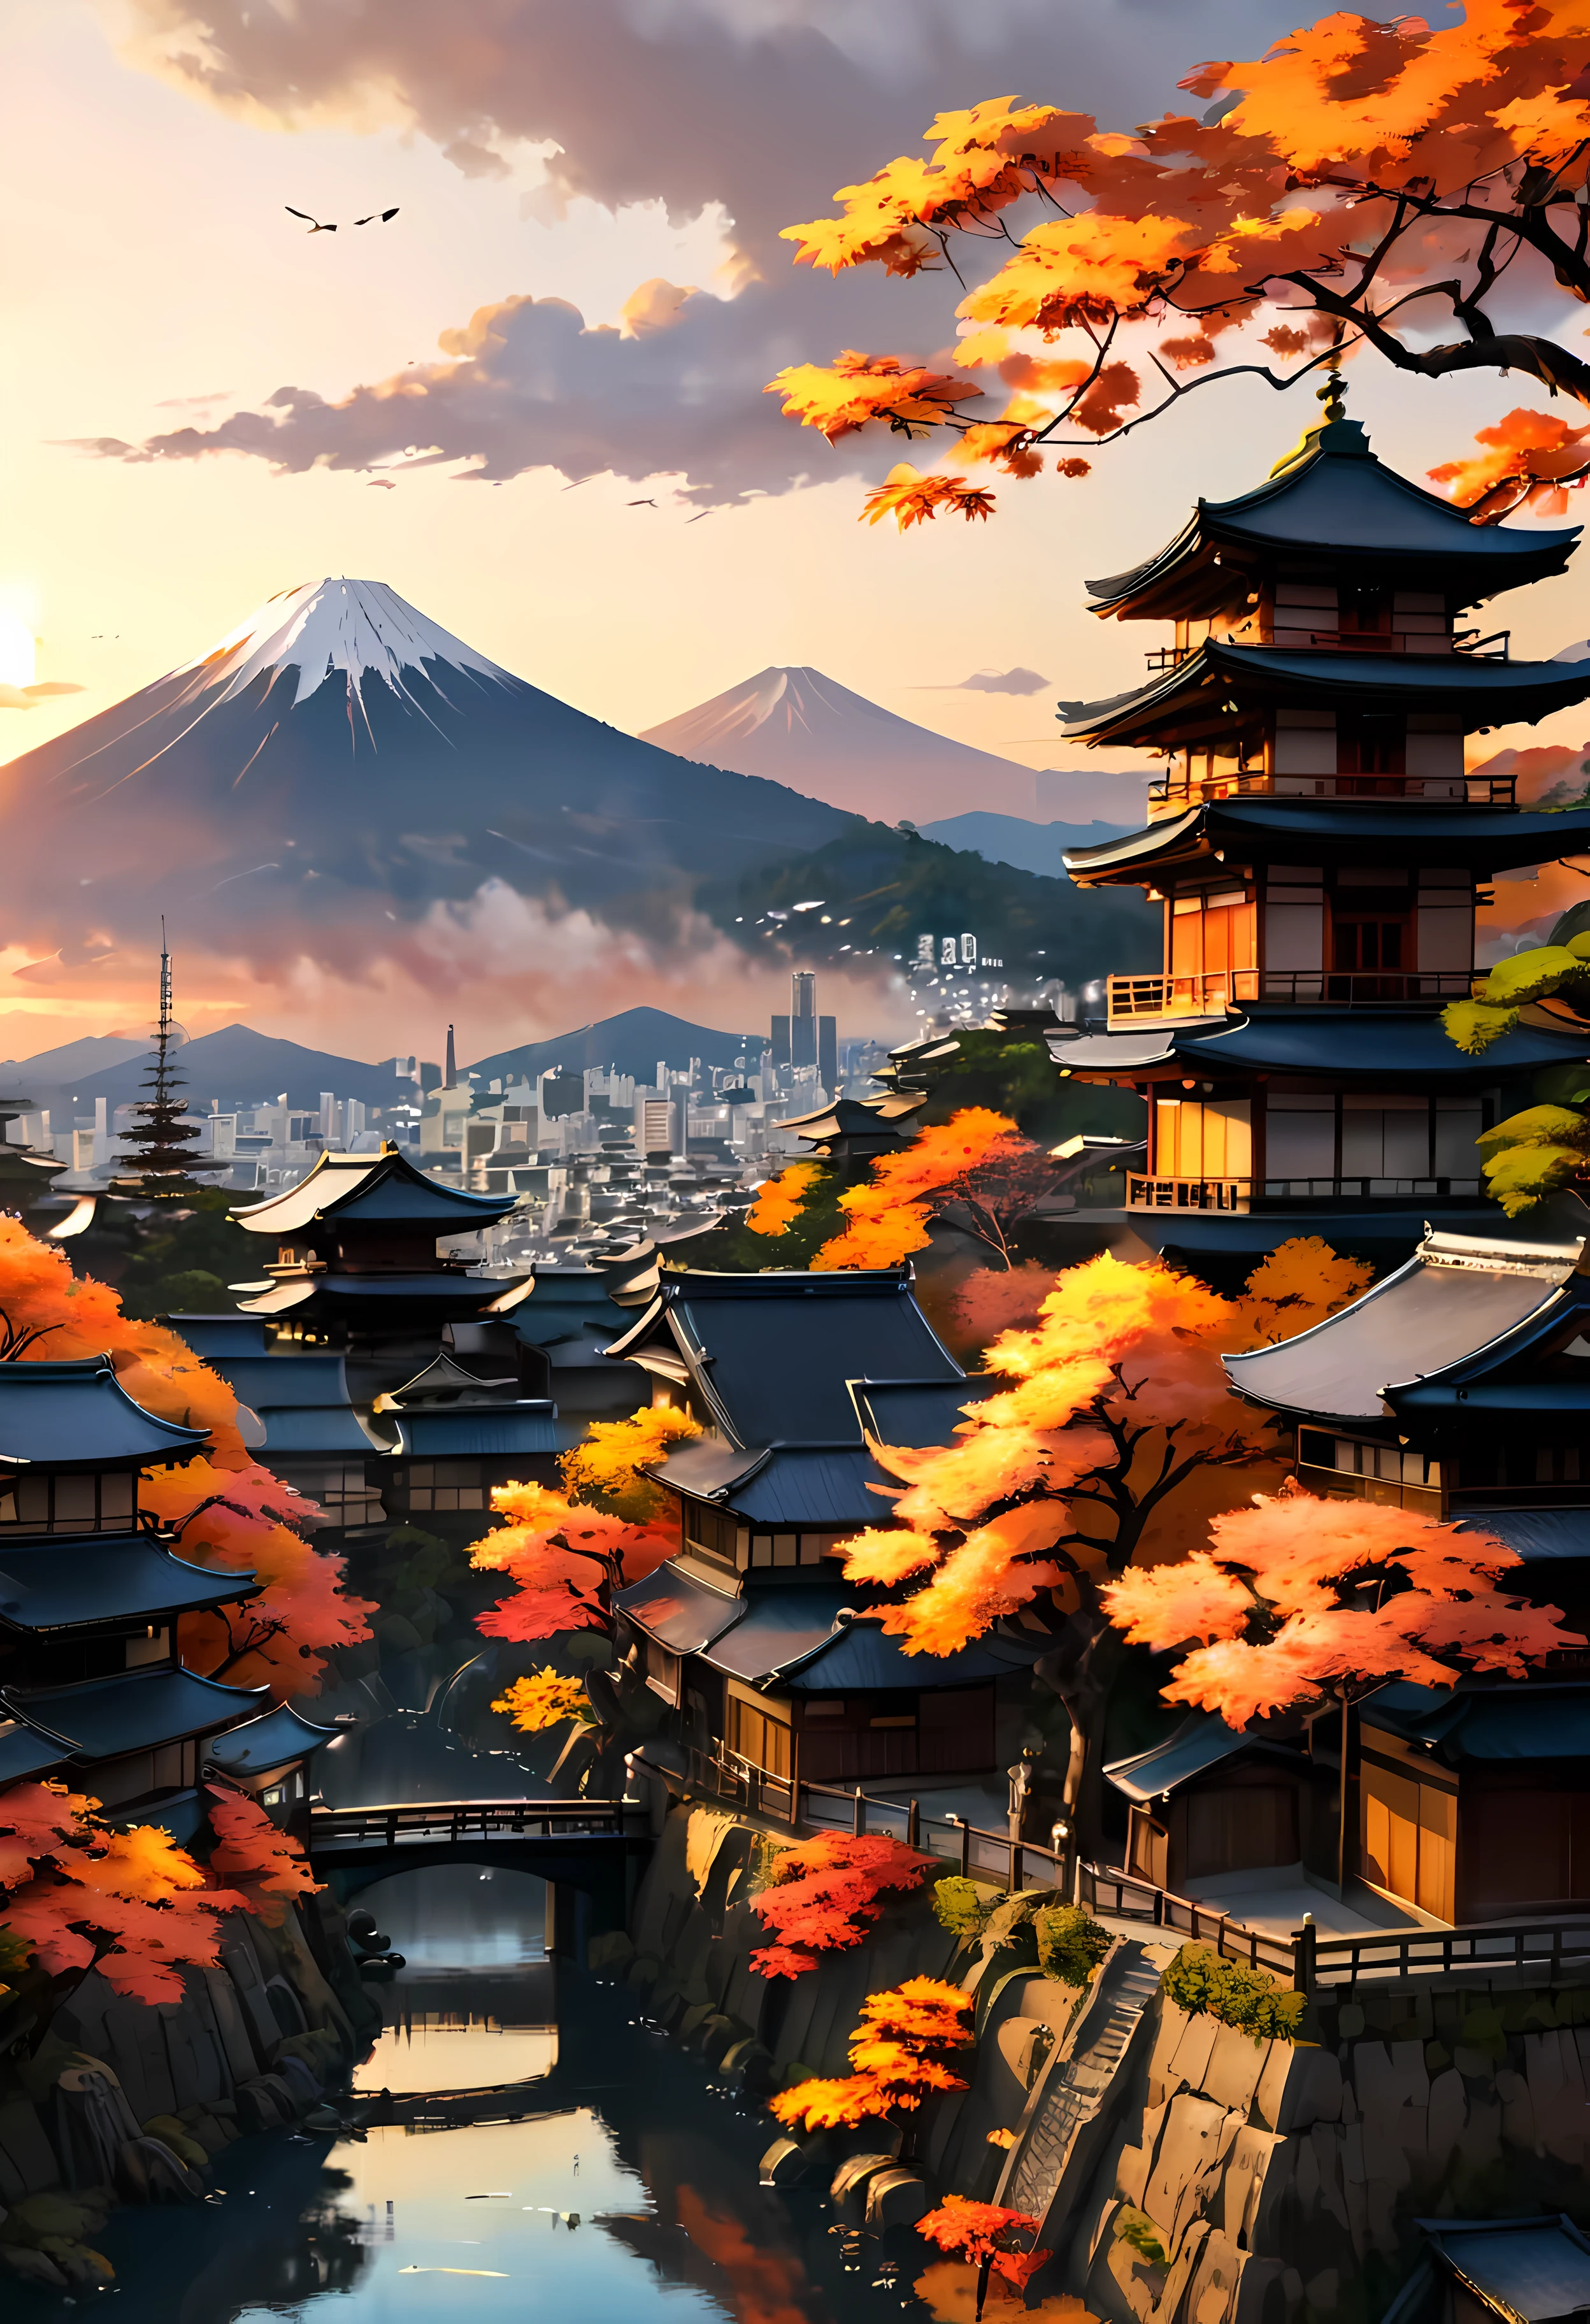 Красное осеннее дерево на террасе парка с видом на древний город Киото и горы, завораживающий пейзаж древнего города, залитый светом заката,((золотой час времени):1.2),((Японский древний город):1.2),((Закатное небо осенью):1.1),нежный свет золотого часа, потрясающие обои, красивые окрестности, оптимистичная матовая живопись, красивые цифровые изображения, Японский древний город background, Красивые и детализированные сцены, UHD под землей, UHD-пейзаж, Величественный концепт-арт, красивый древний город. |(Шедевр в максимальном разрешении 16К), Лучшее качество, (очень детальное качество обоев CG Unity 16k),(Мягкие цвета, 16k, высокодетализированное цифровое искусство),Супер подробный. | идеальный образ,16 тыс. УЕ5,официальная картина, сверхтонкий, глубина резкости, нет контраста, чистый острый фокус, Профессиональный, Нет размытия. | (((Более детально))).